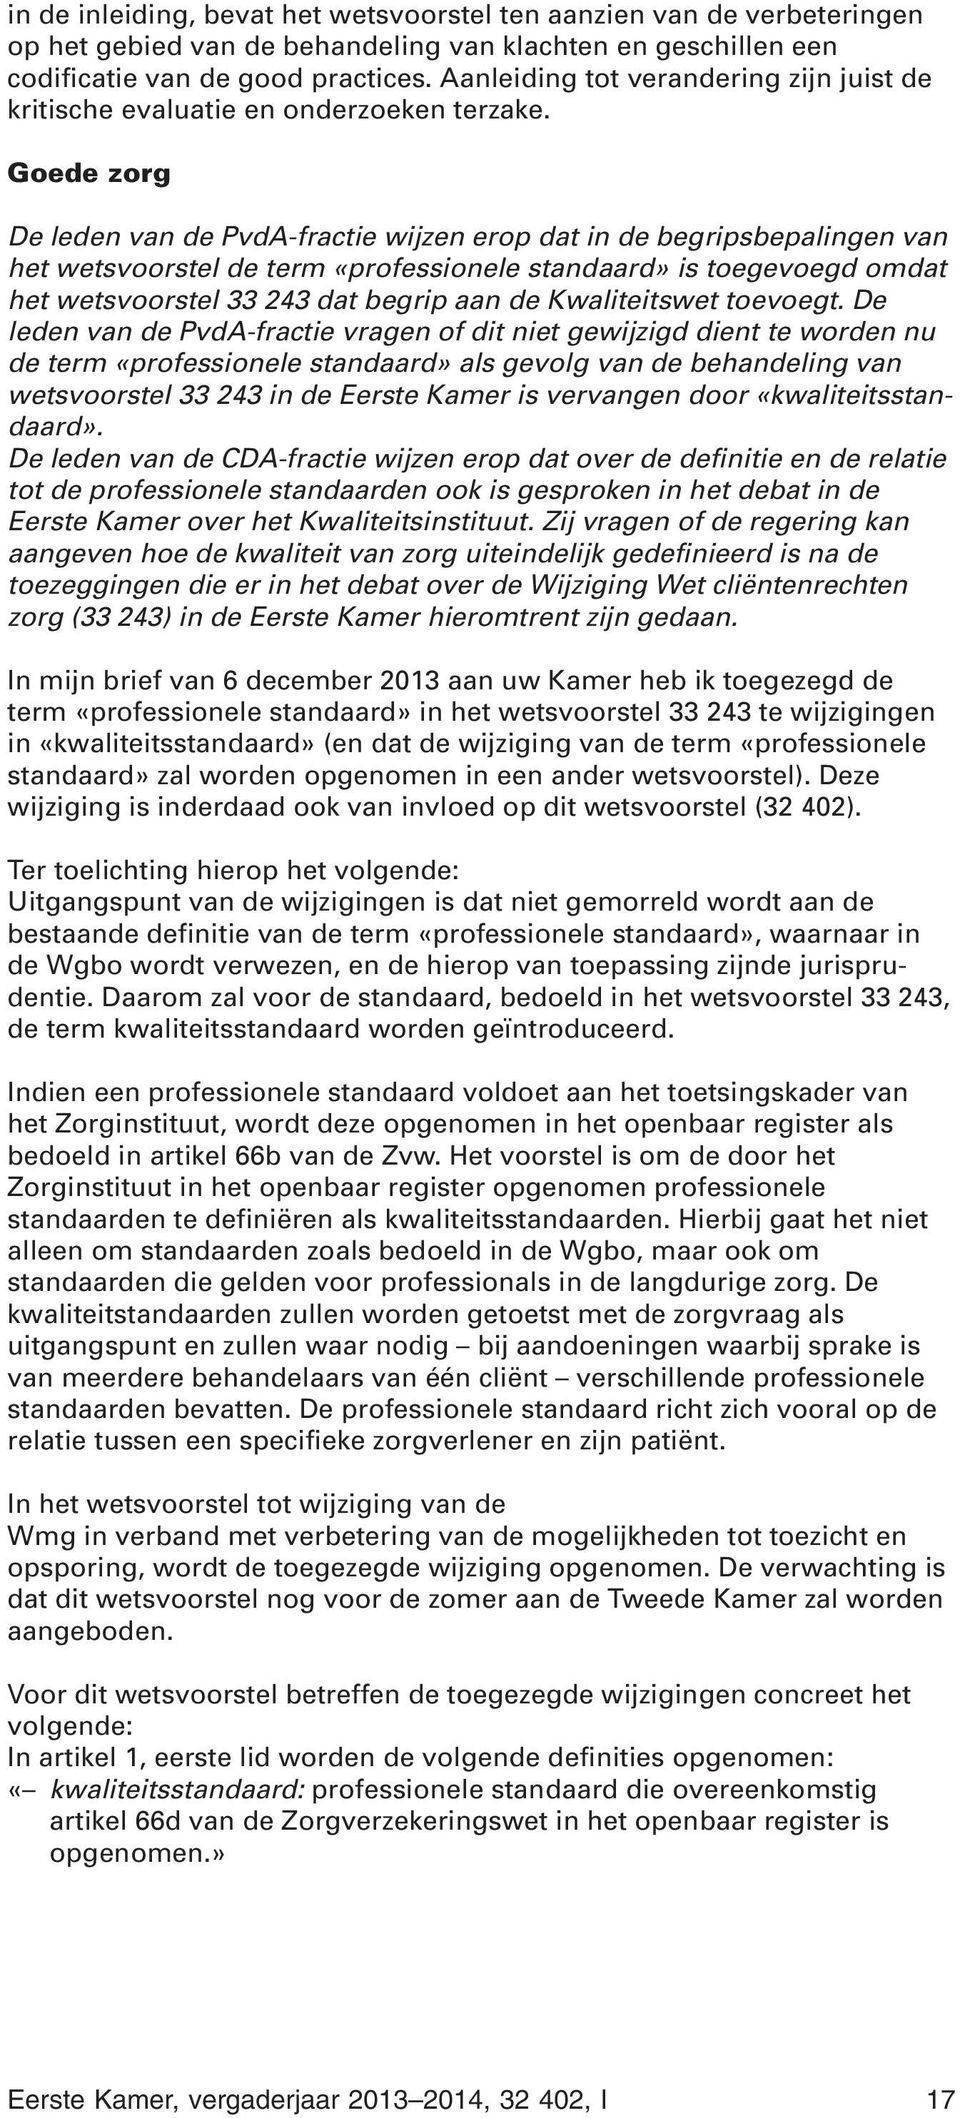 Goede zorg De leden van de PvdA-fractie wijzen erop dat in de begripsbepalingen van het wetsvoorstel de term «professionele standaard» is toegevoegd omdat het wetsvoorstel 33 243 dat begrip aan de